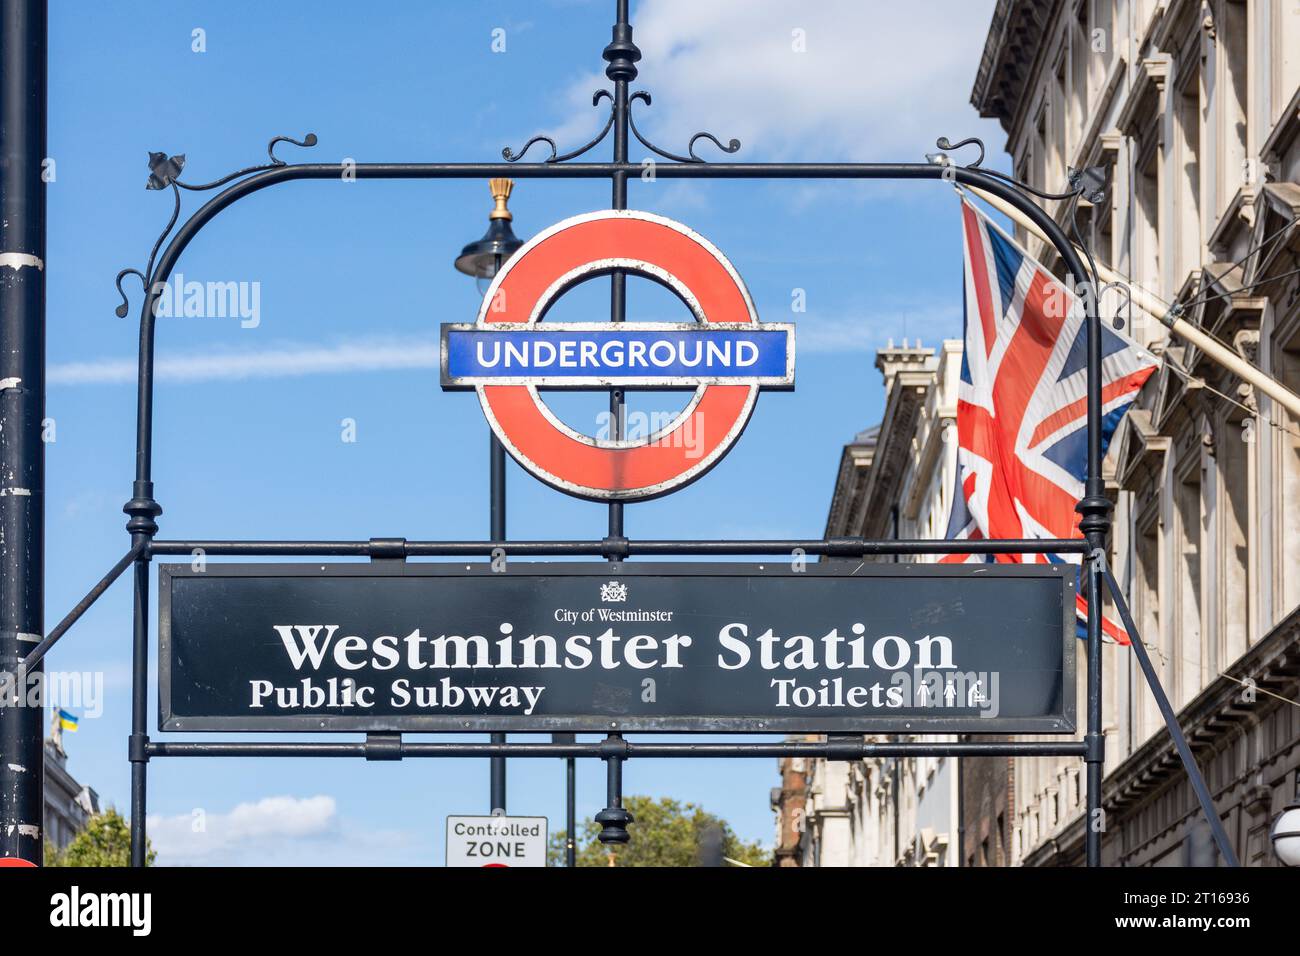 Enseigne de la station de métro Westminster, Parliament Street, City of Westminster, Greater London, England, Royaume-Uni Banque D'Images